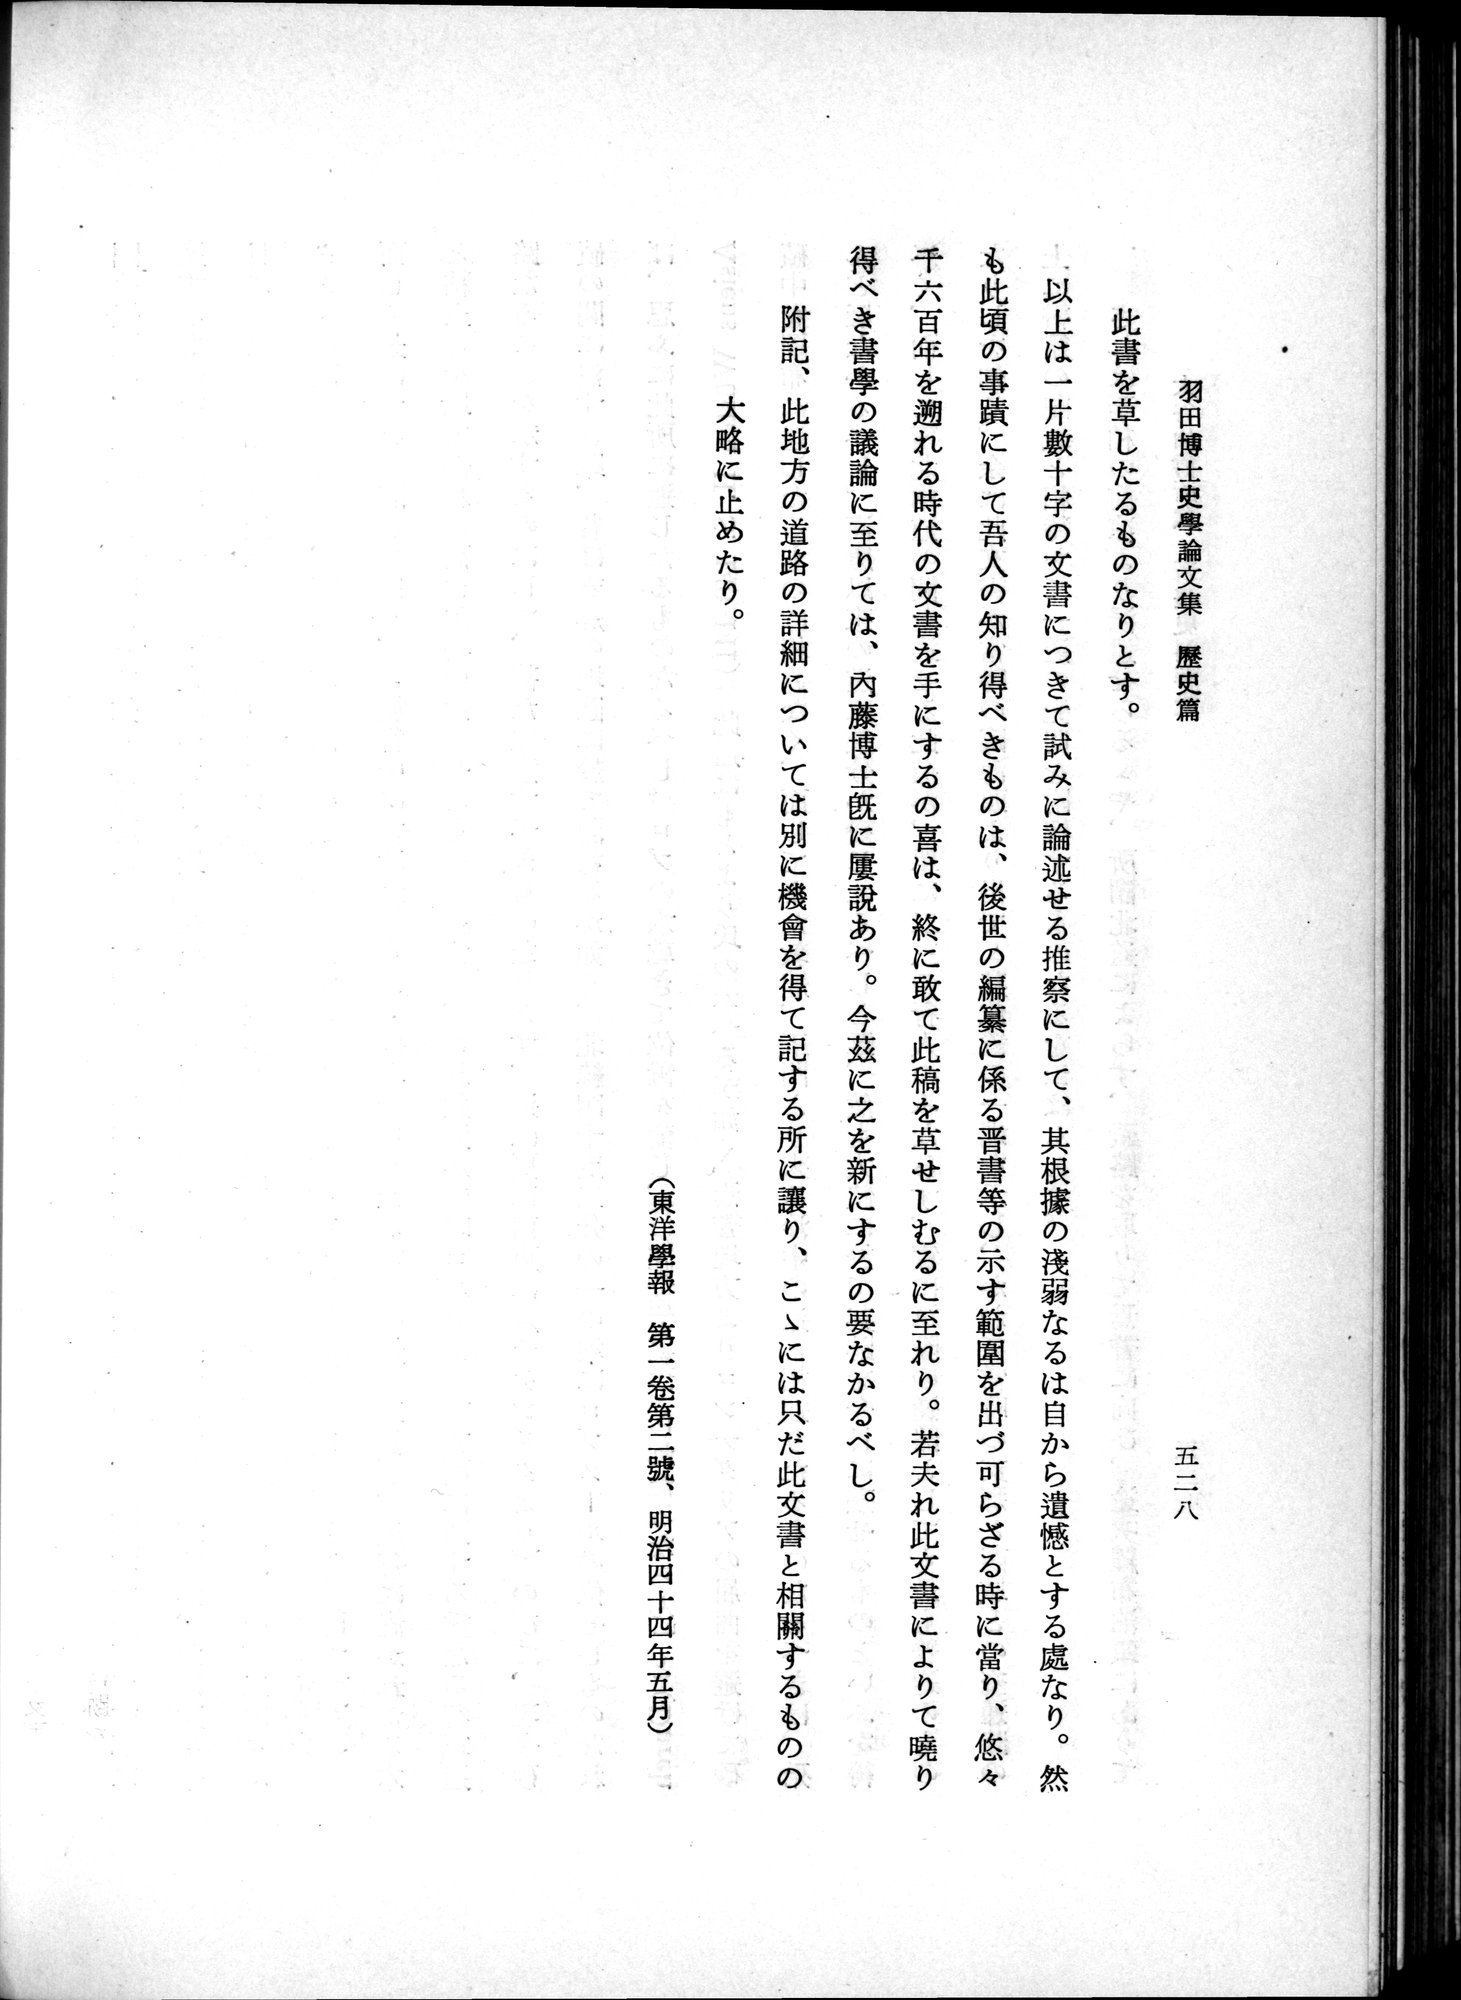 羽田博士史学論文集 : vol.1 / Page 566 (Grayscale High Resolution Image)